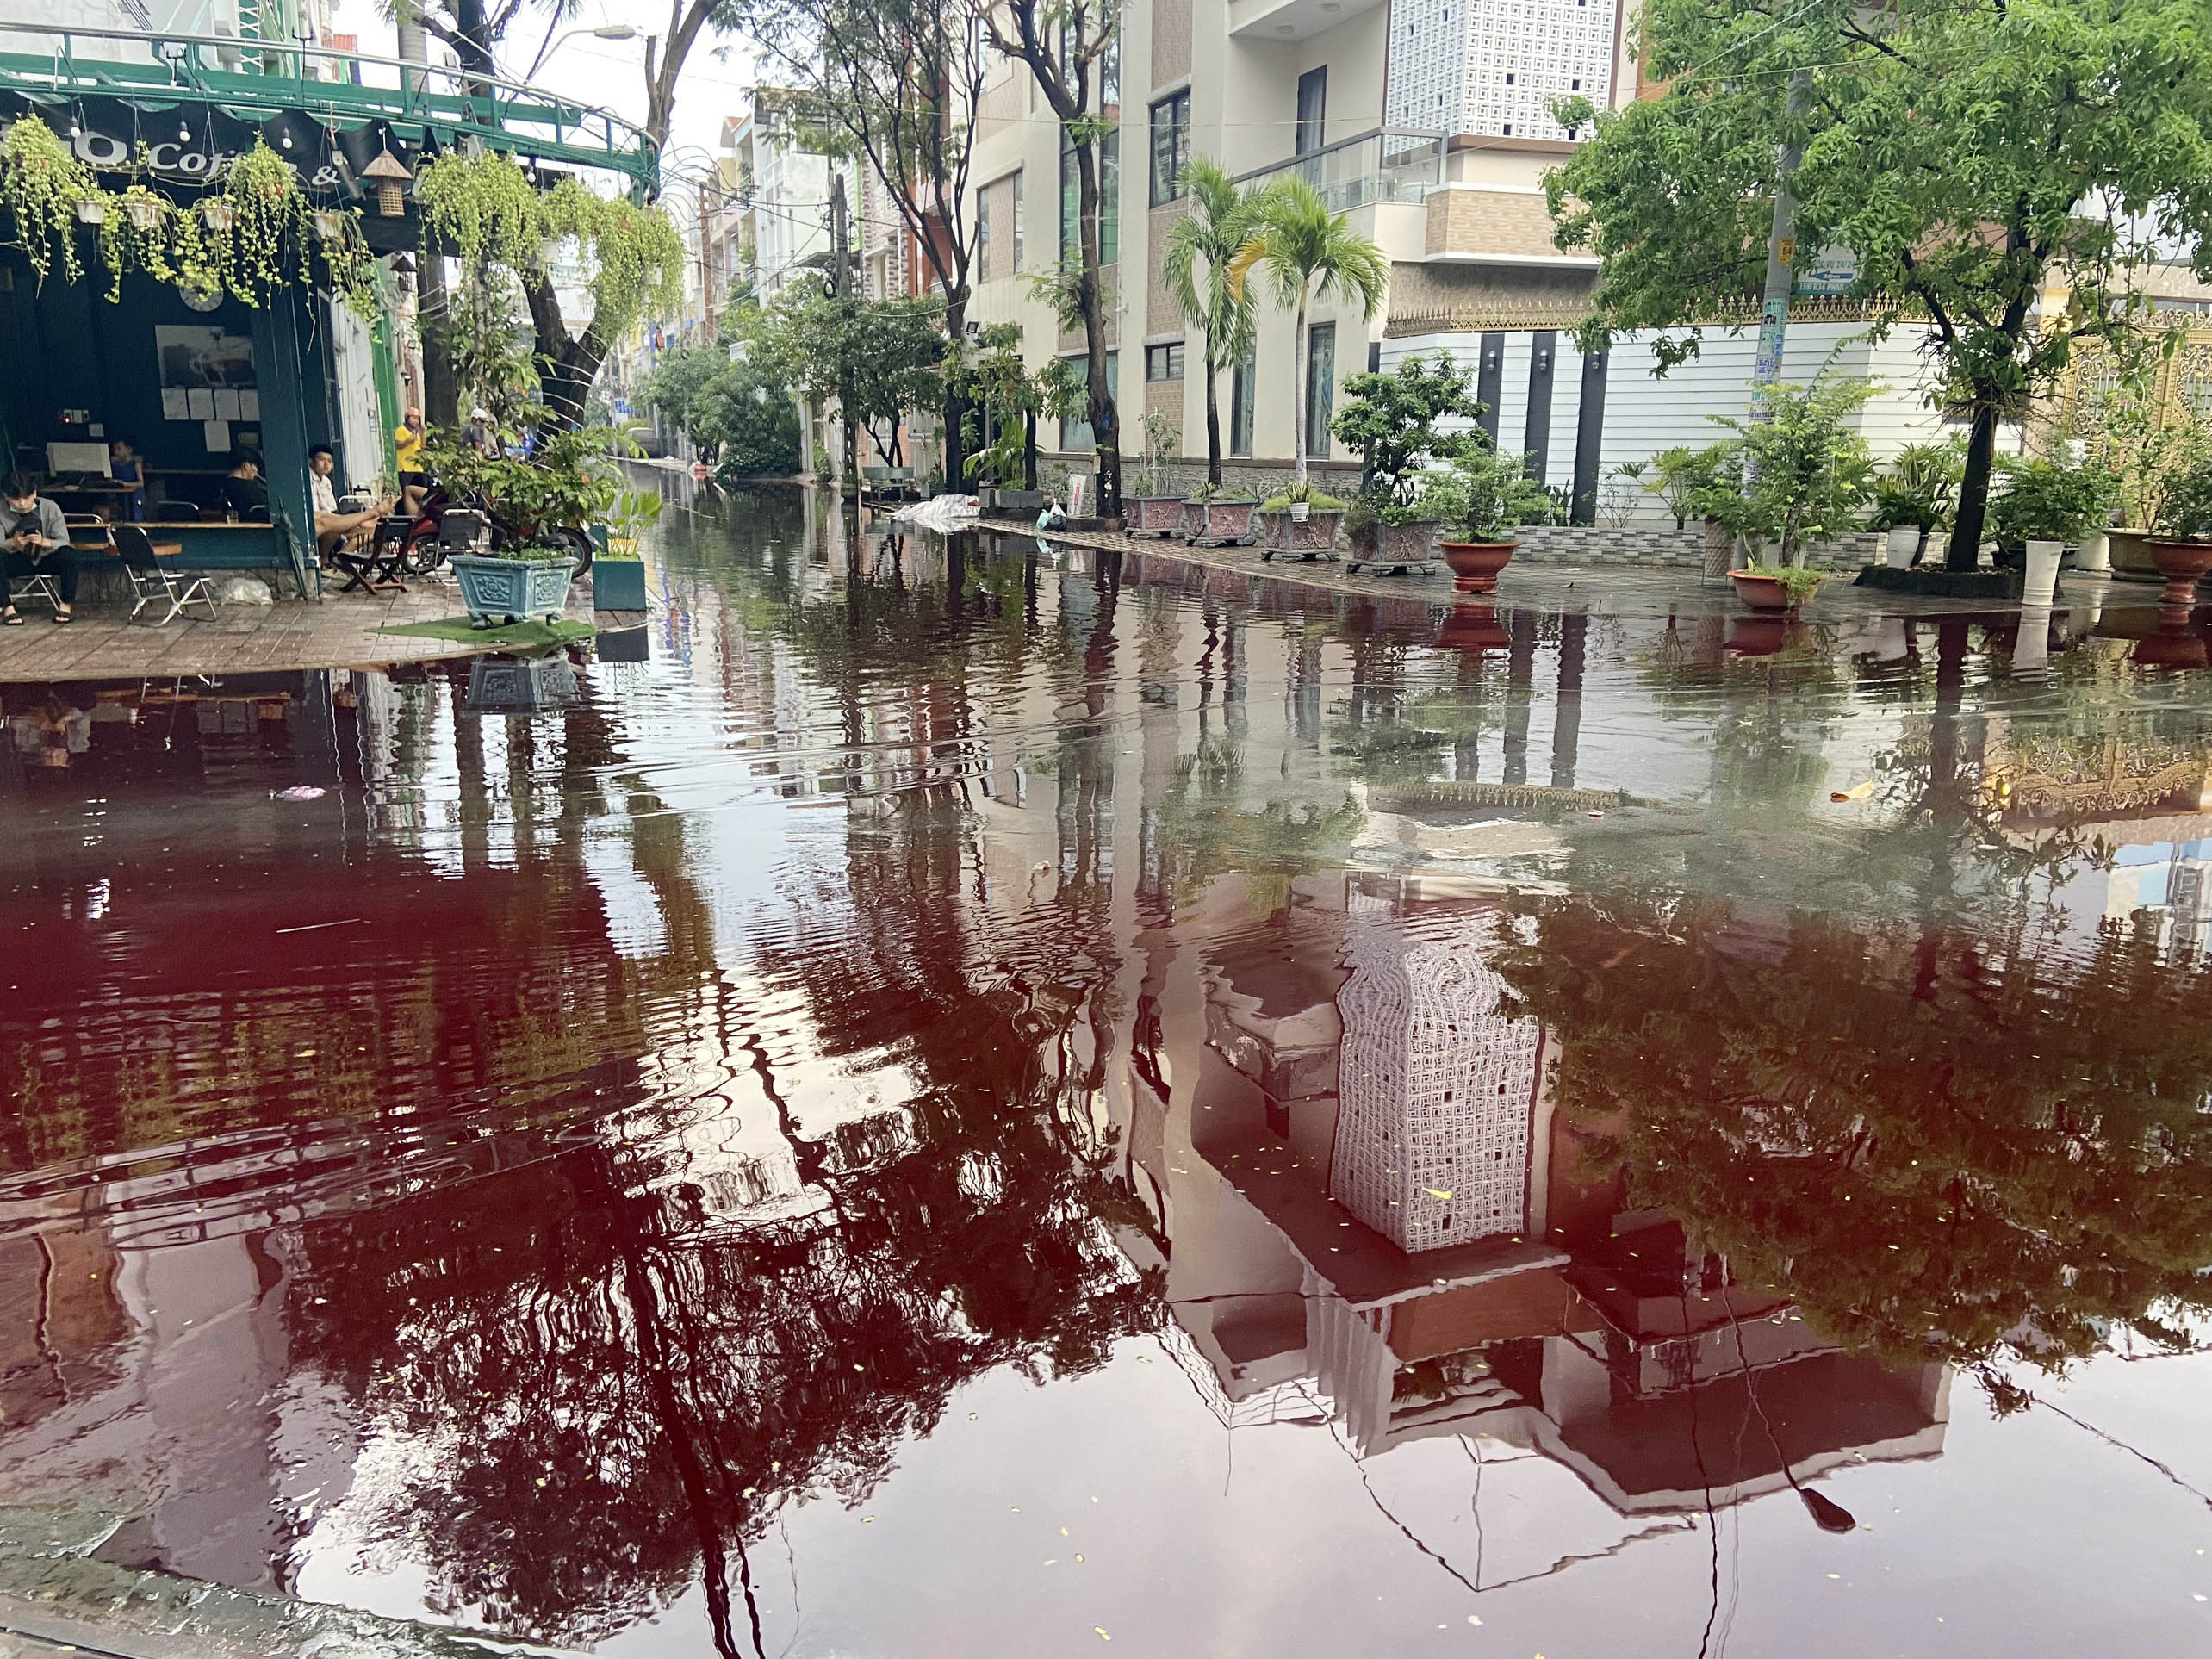 Chiều 23/10, cơn mưa lớn trút xuống địa bàn quận Bình Tân, Tân Phú khiến nhiều tuyến đường bị ngập. Sau mưa, tại khu vực đường Phan Anh giao với Tô Hiệu (quận Tân Phú) nước ngập kèm theo màu đỏ ngòm.